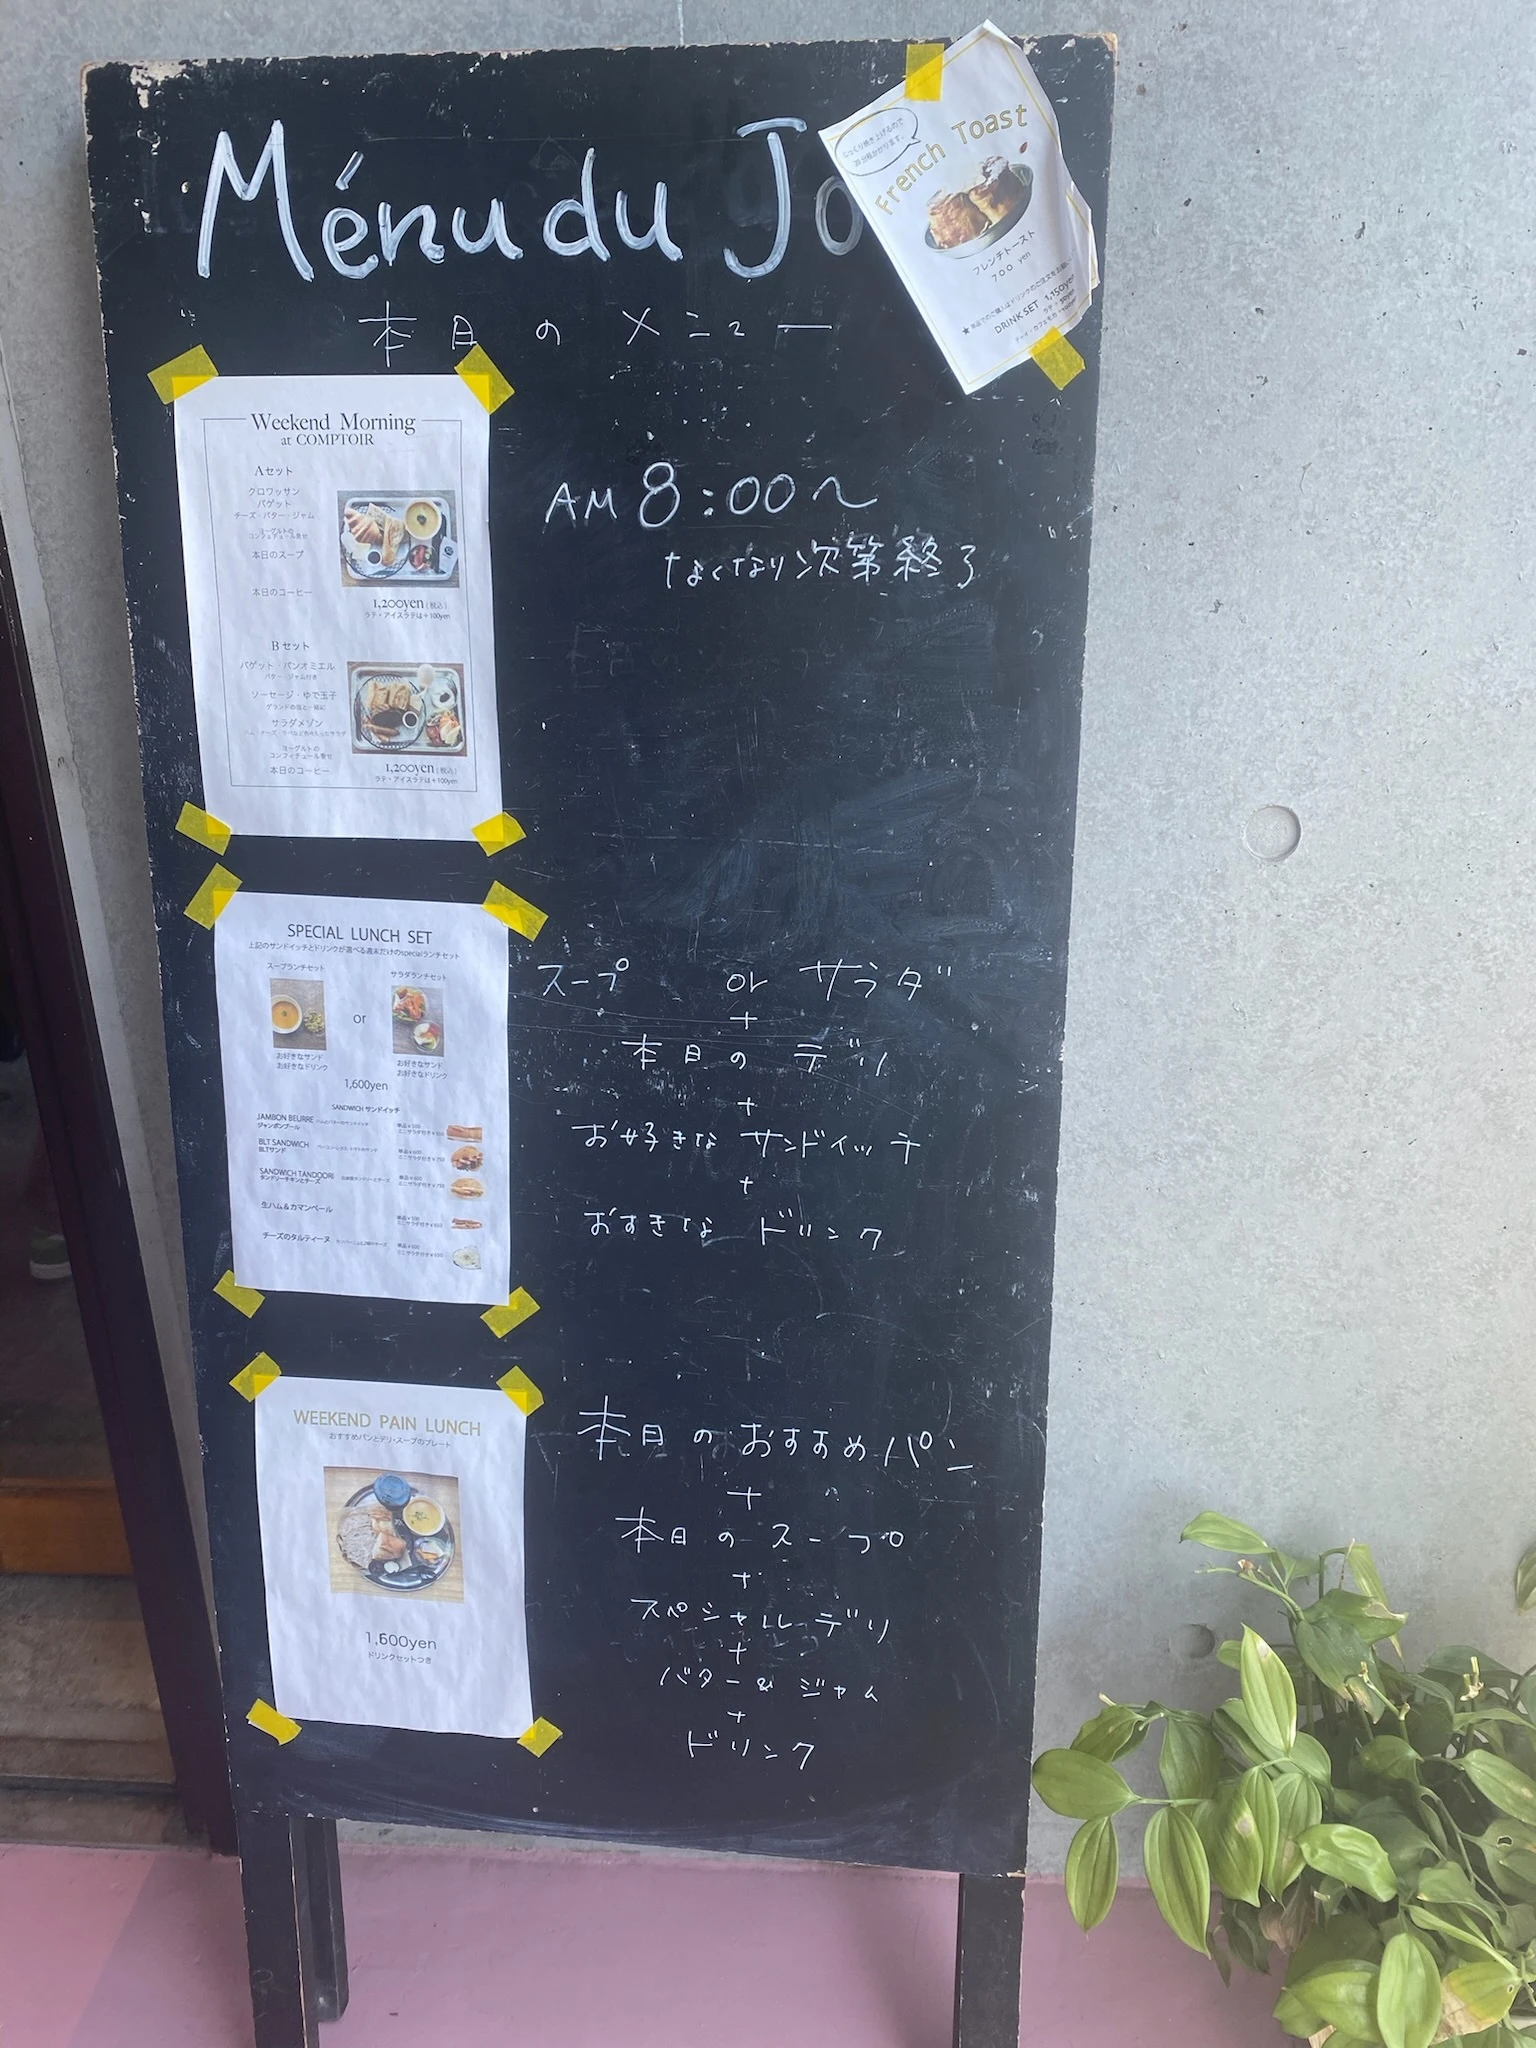 都立大学駅にあるパン屋さん「Toshi Au Coeur du Pain」の2Fにあるカフェ「COMPTOIR」のメニューが描かれた看板。黒い黒板には、チョークでメニューの詳細が書かれており、横には写真つきのメニューも貼ってあります。